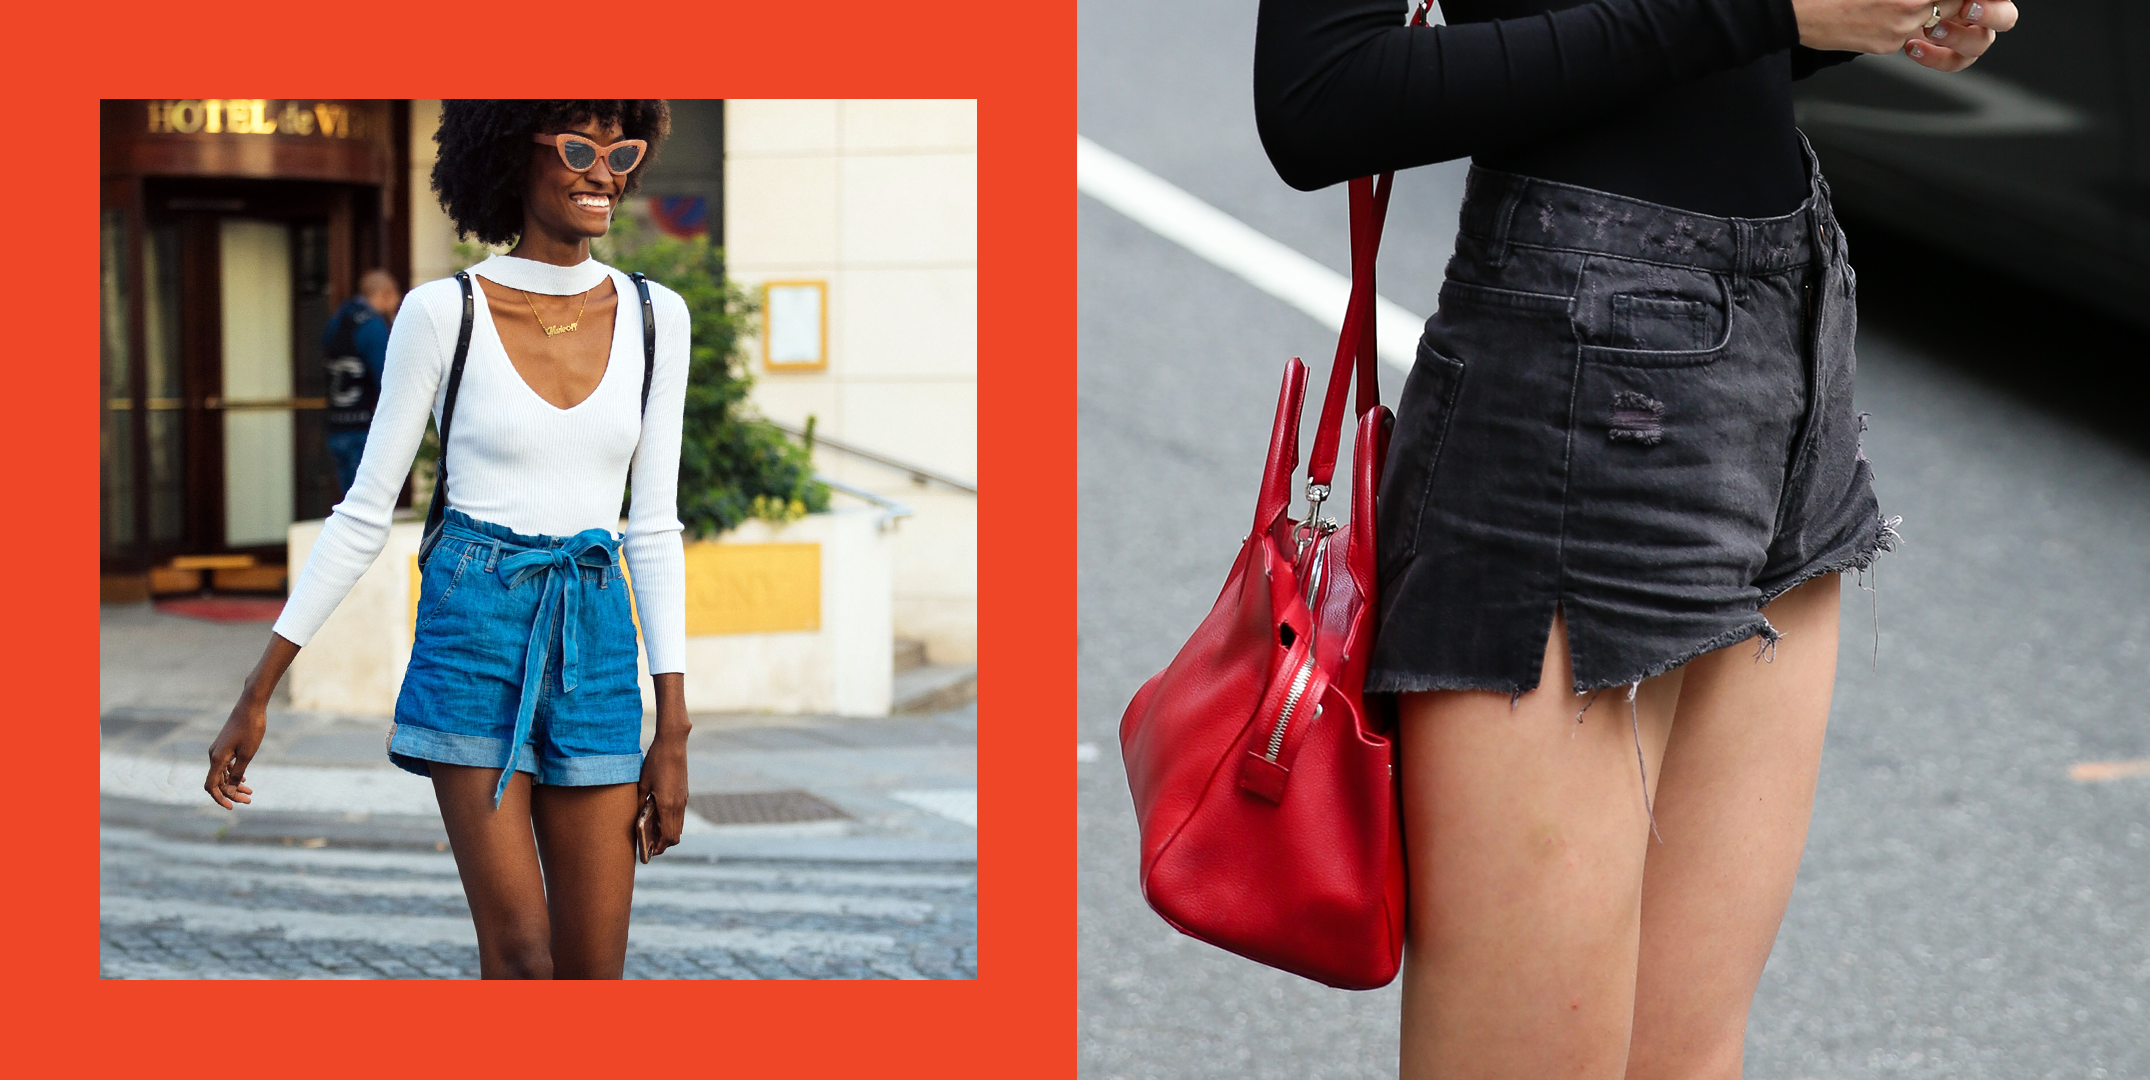 12 New Updated Ways to Wear Denim Shorts This Summer